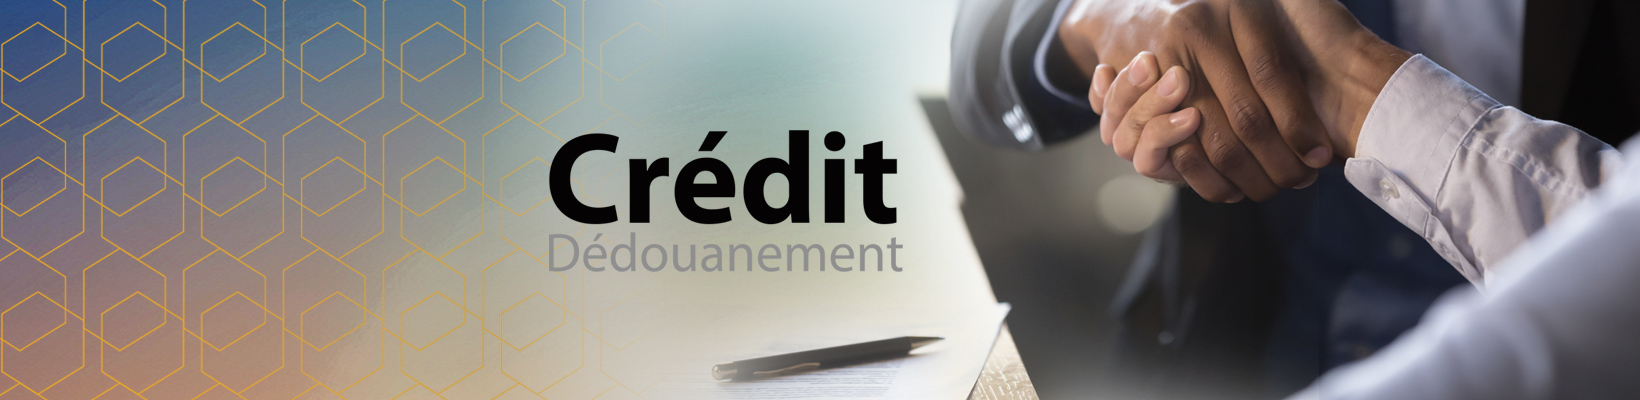 1640x400-credit-Dedouanement